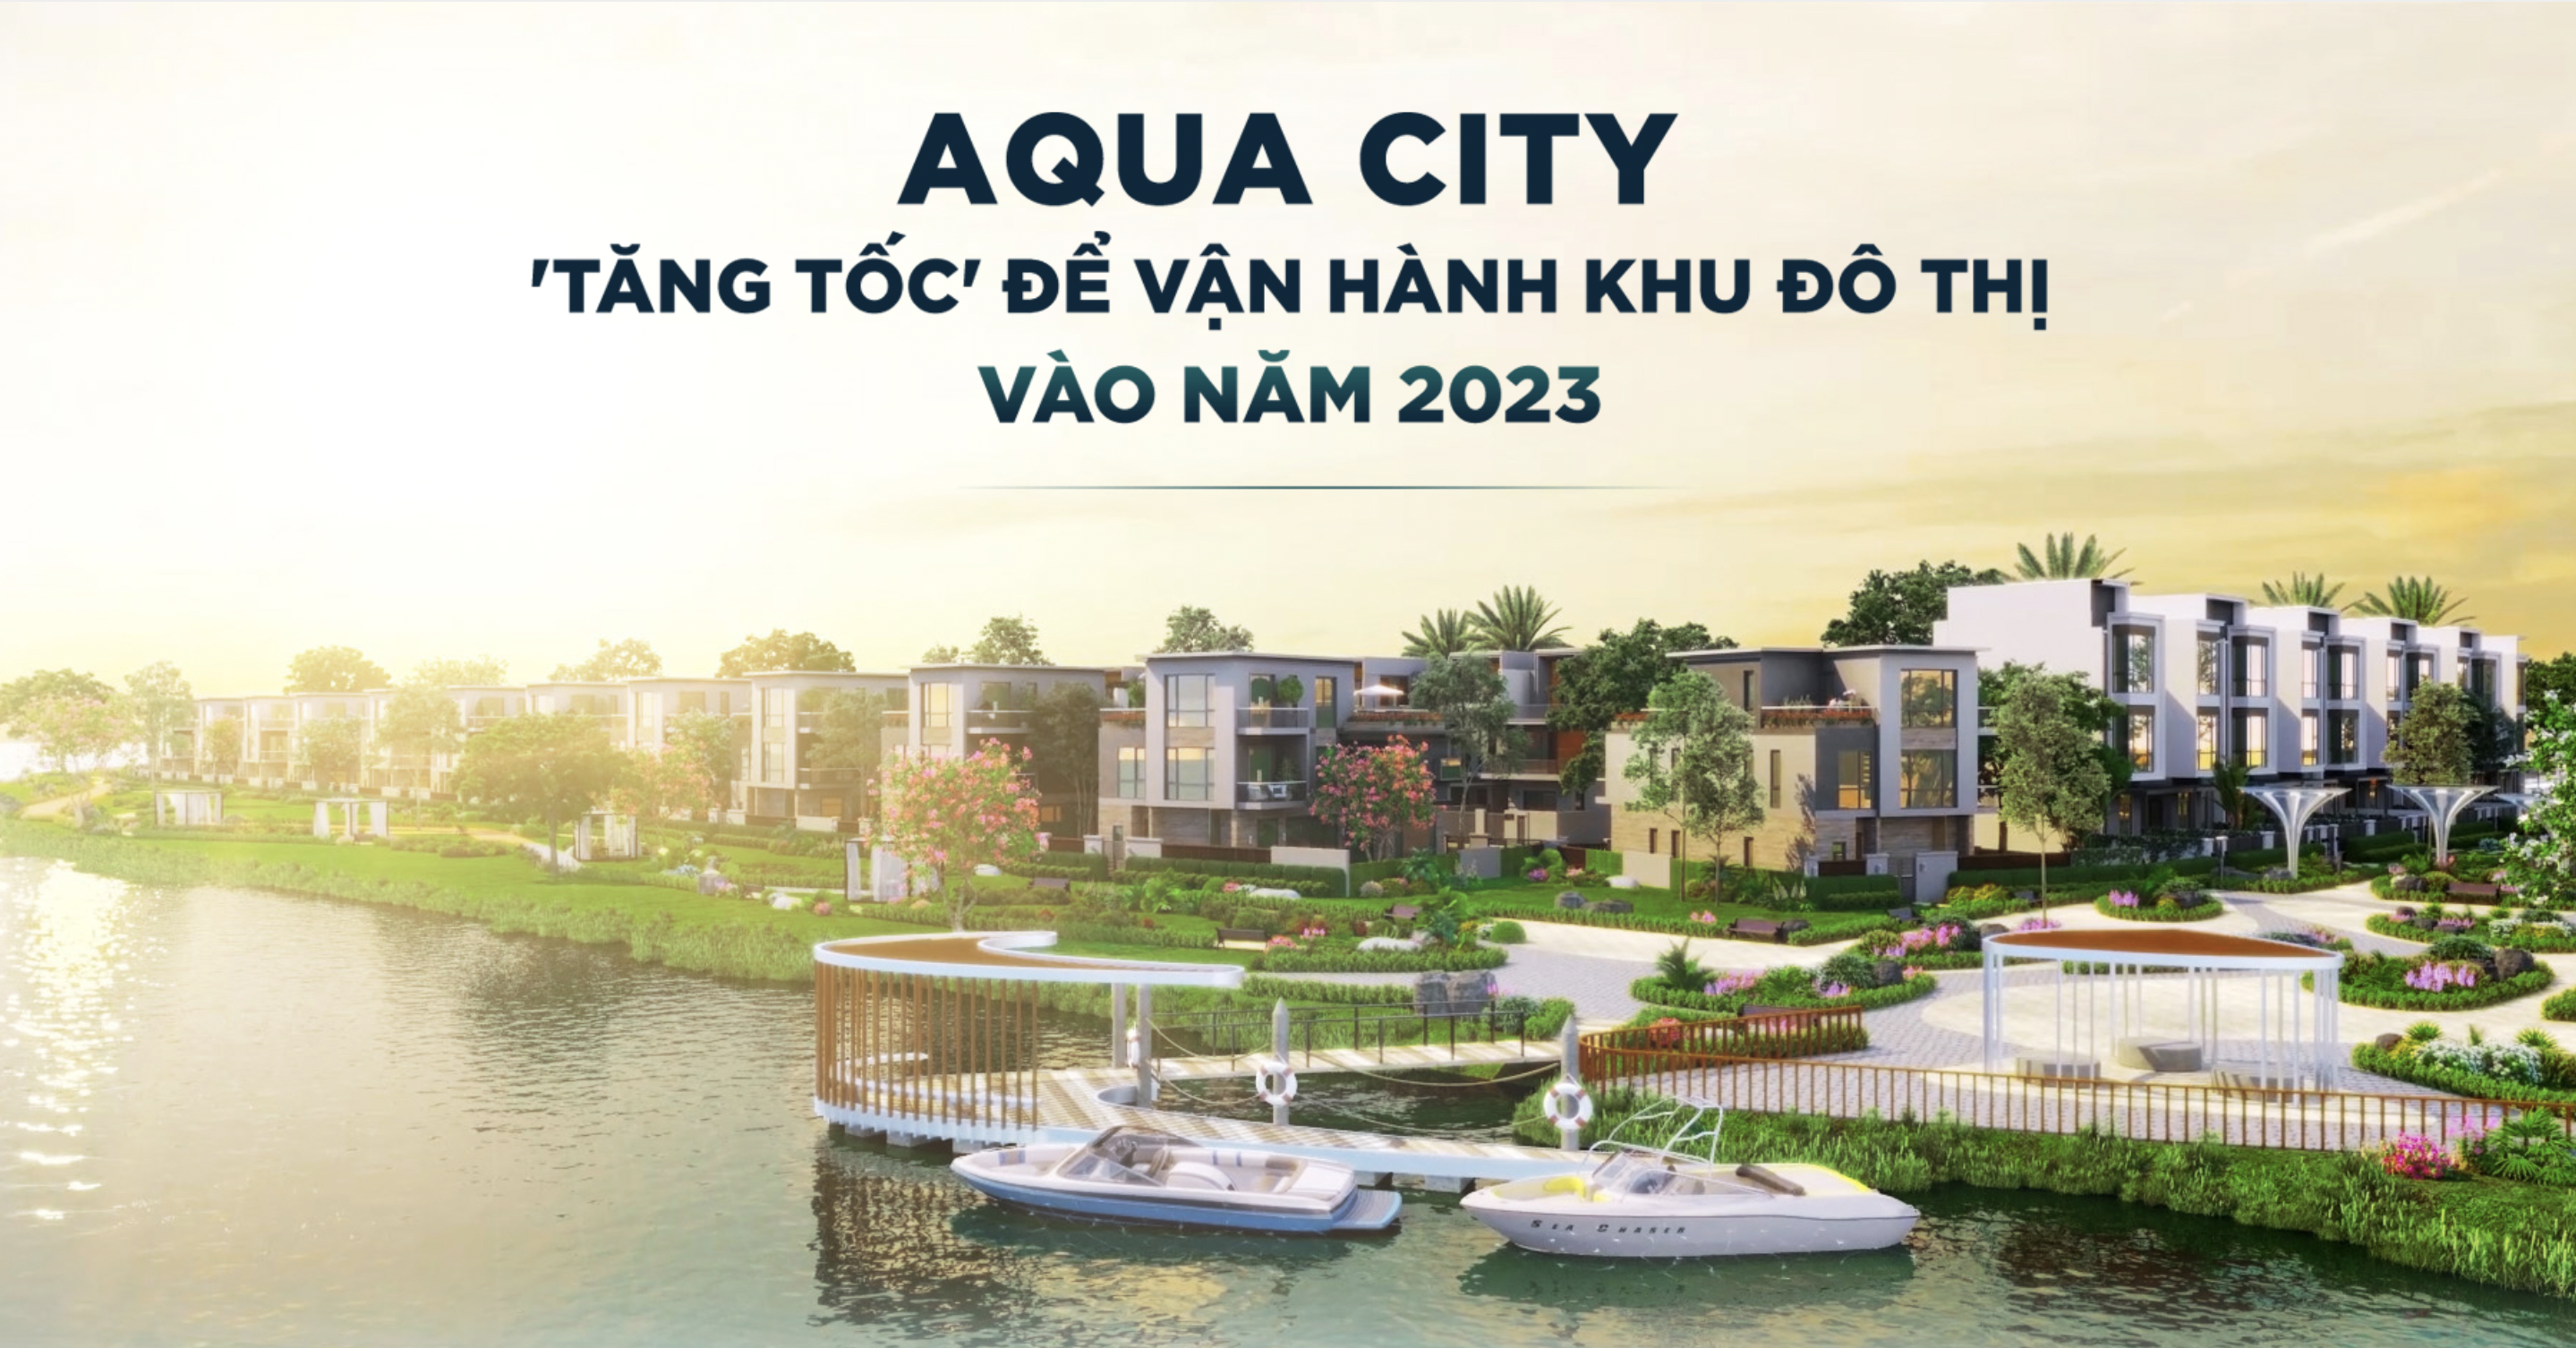 Aqua City Tăng Tốc để vận hành Khu Đô Thị vào Năm 2023 2